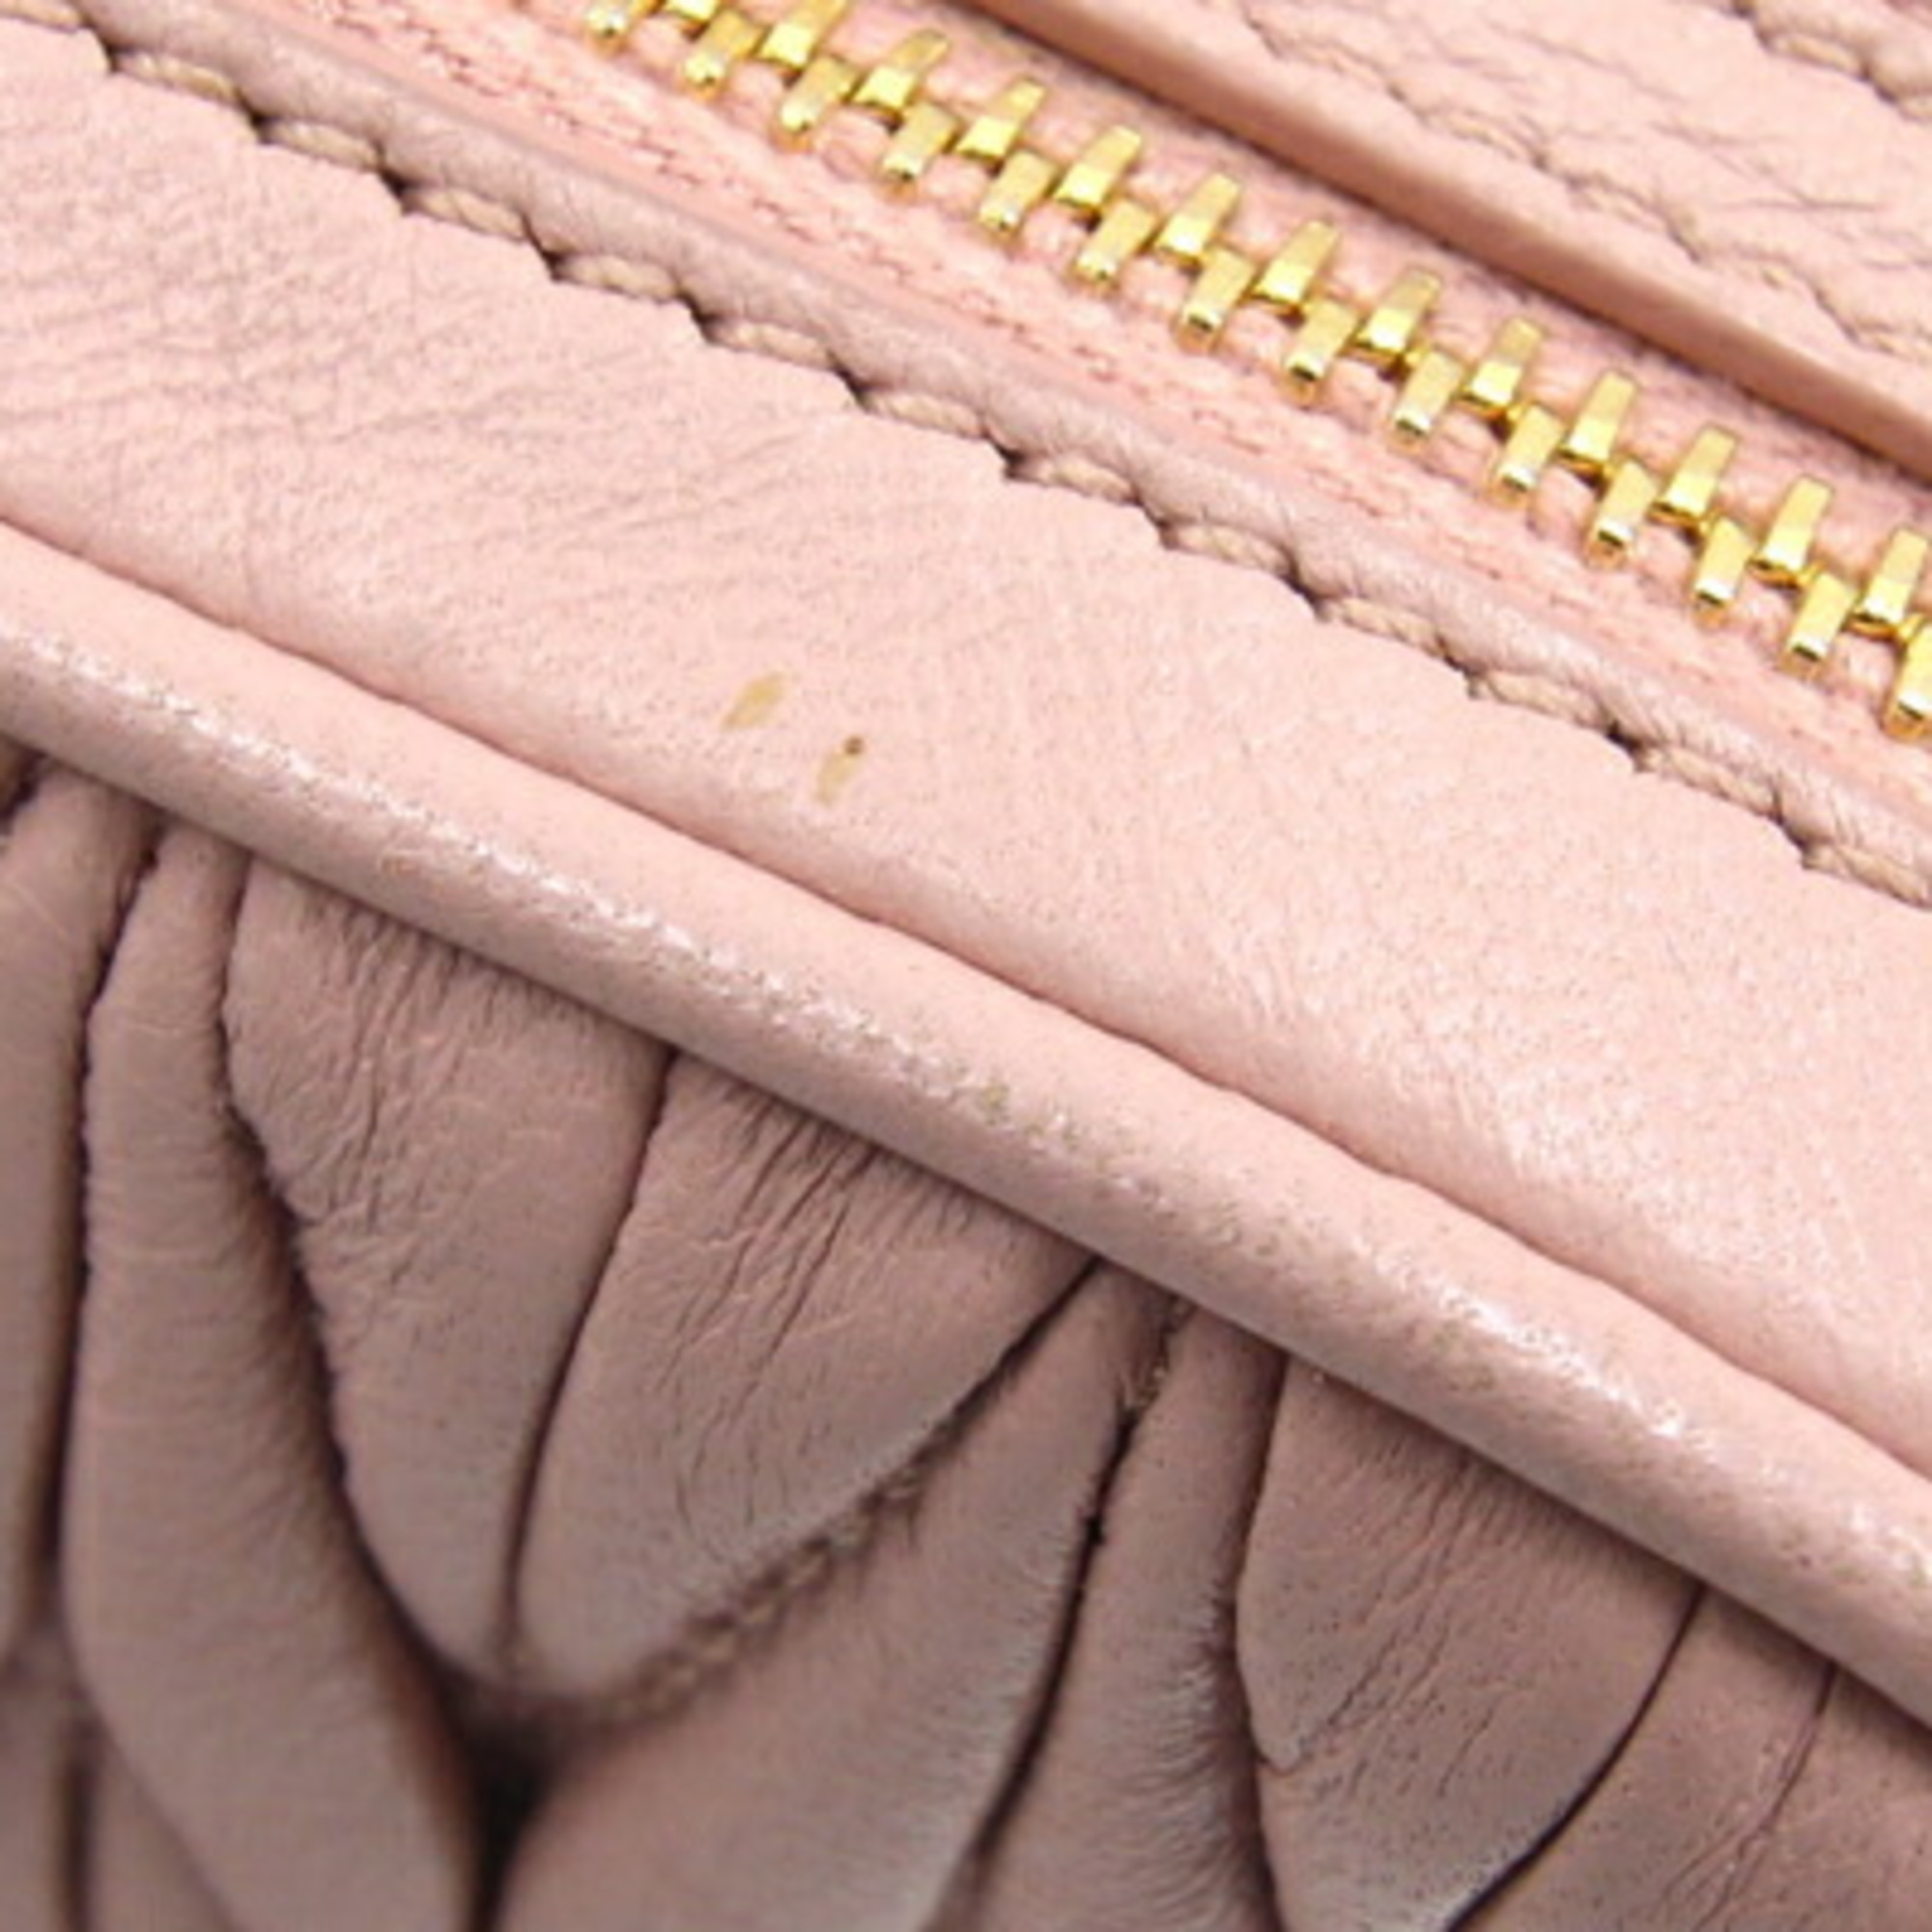 Miu Miu Miu Shoulder Bag Matelasse 5NF011 Pink Leather Pochette Women's MIUMIU